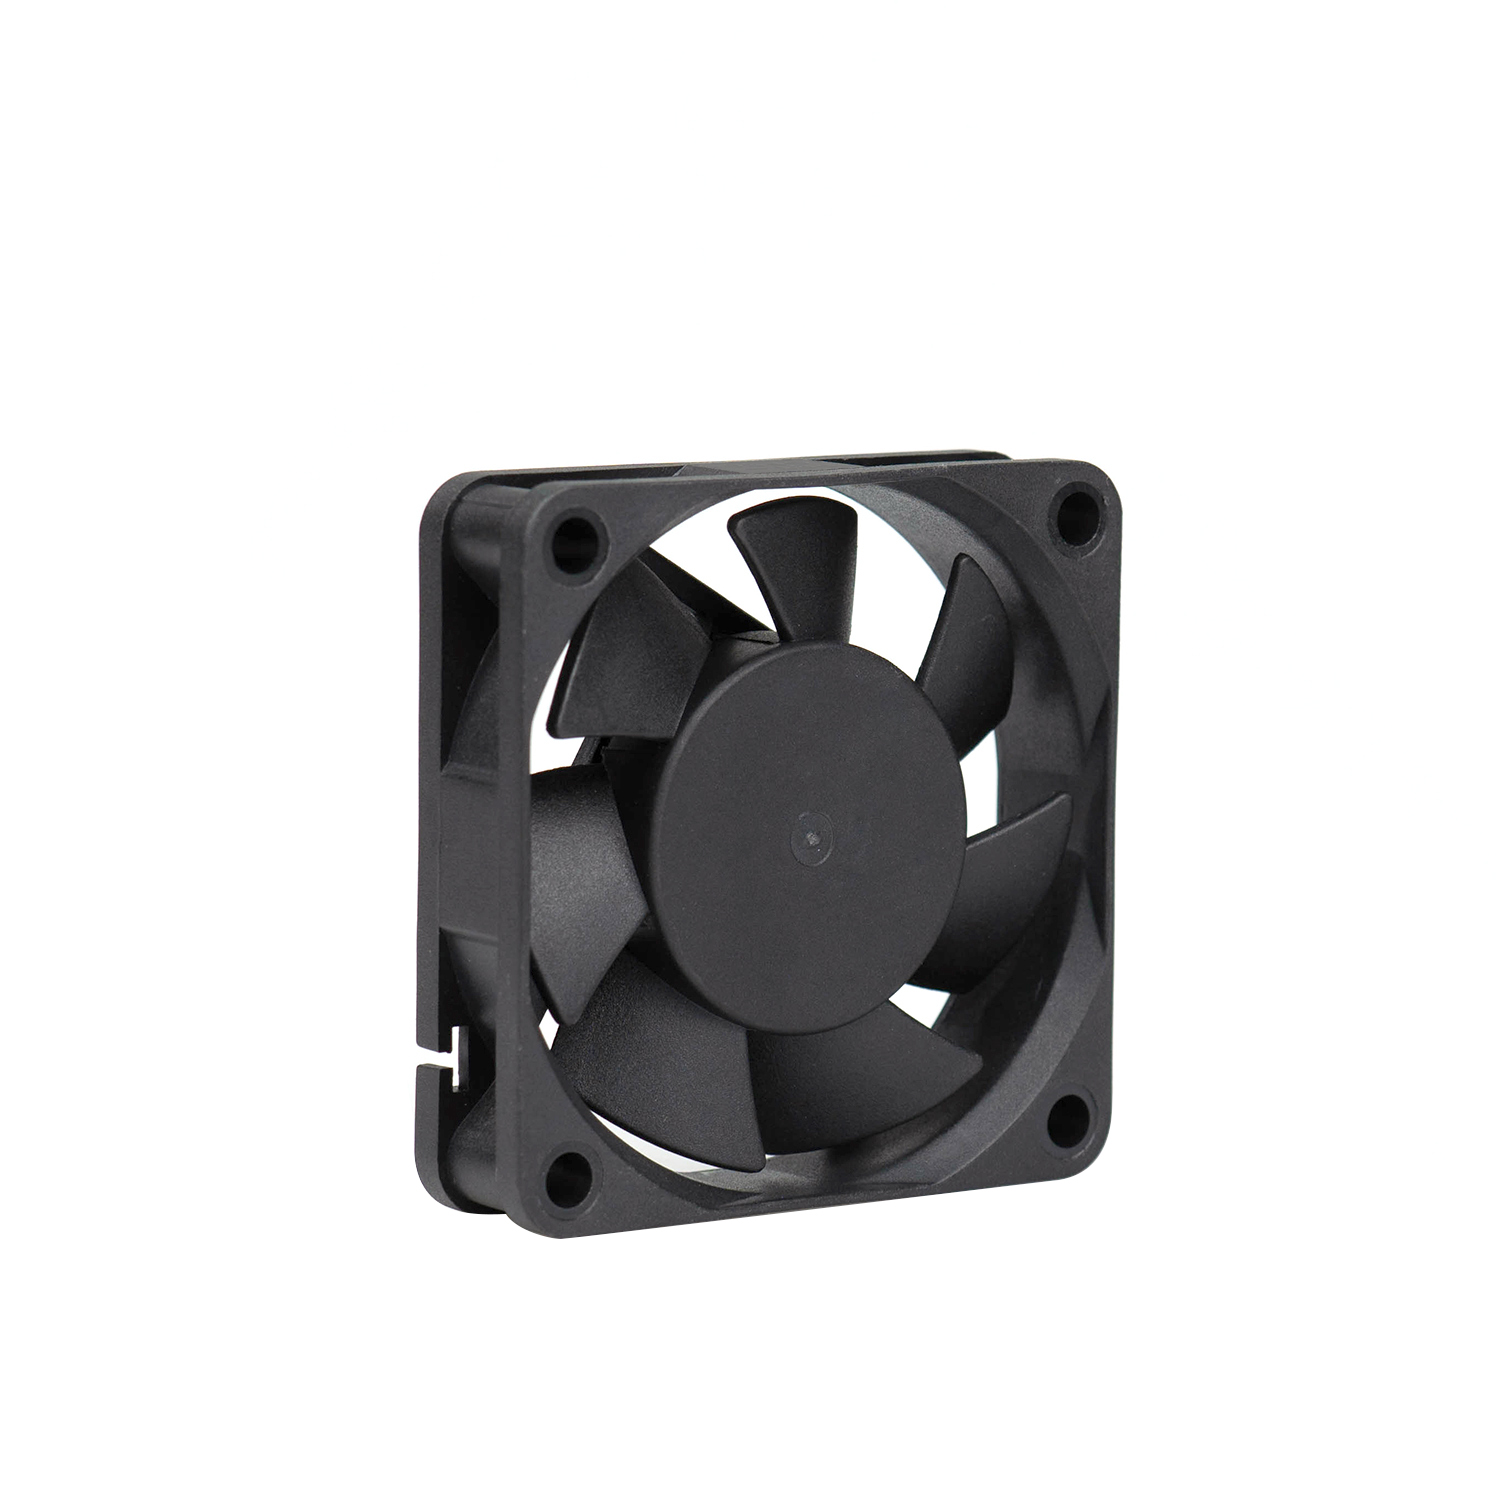 60mm square 12v DC cooling Fan for car